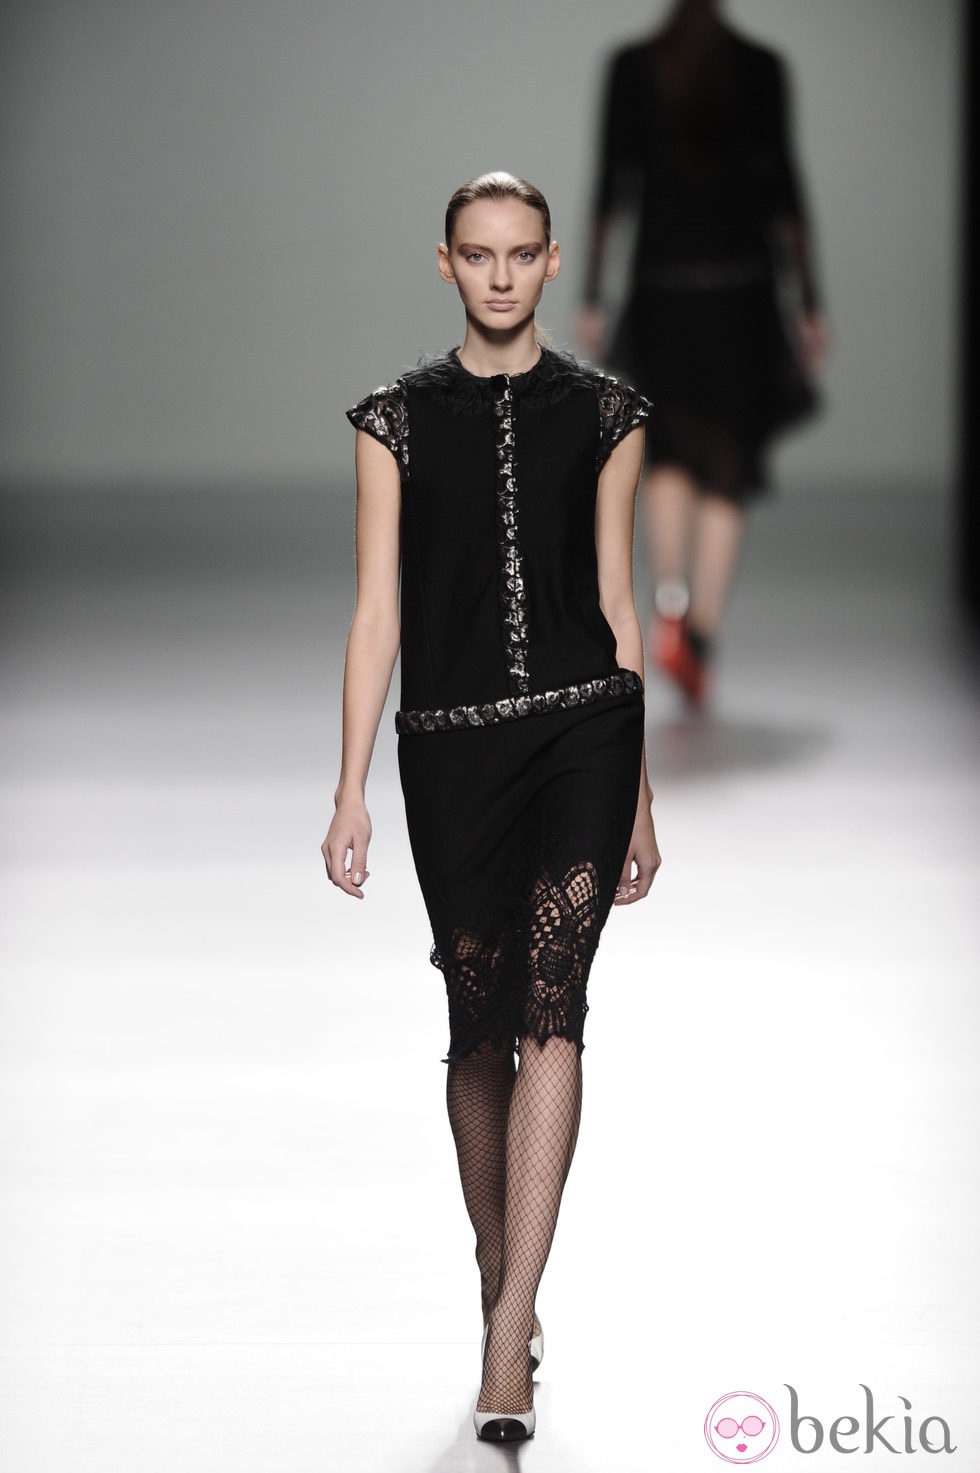 Vestido negro con encaje de la colección otoño/invierno 2013/2014 de Victorio y Lucchino en Madrid Fashion Week